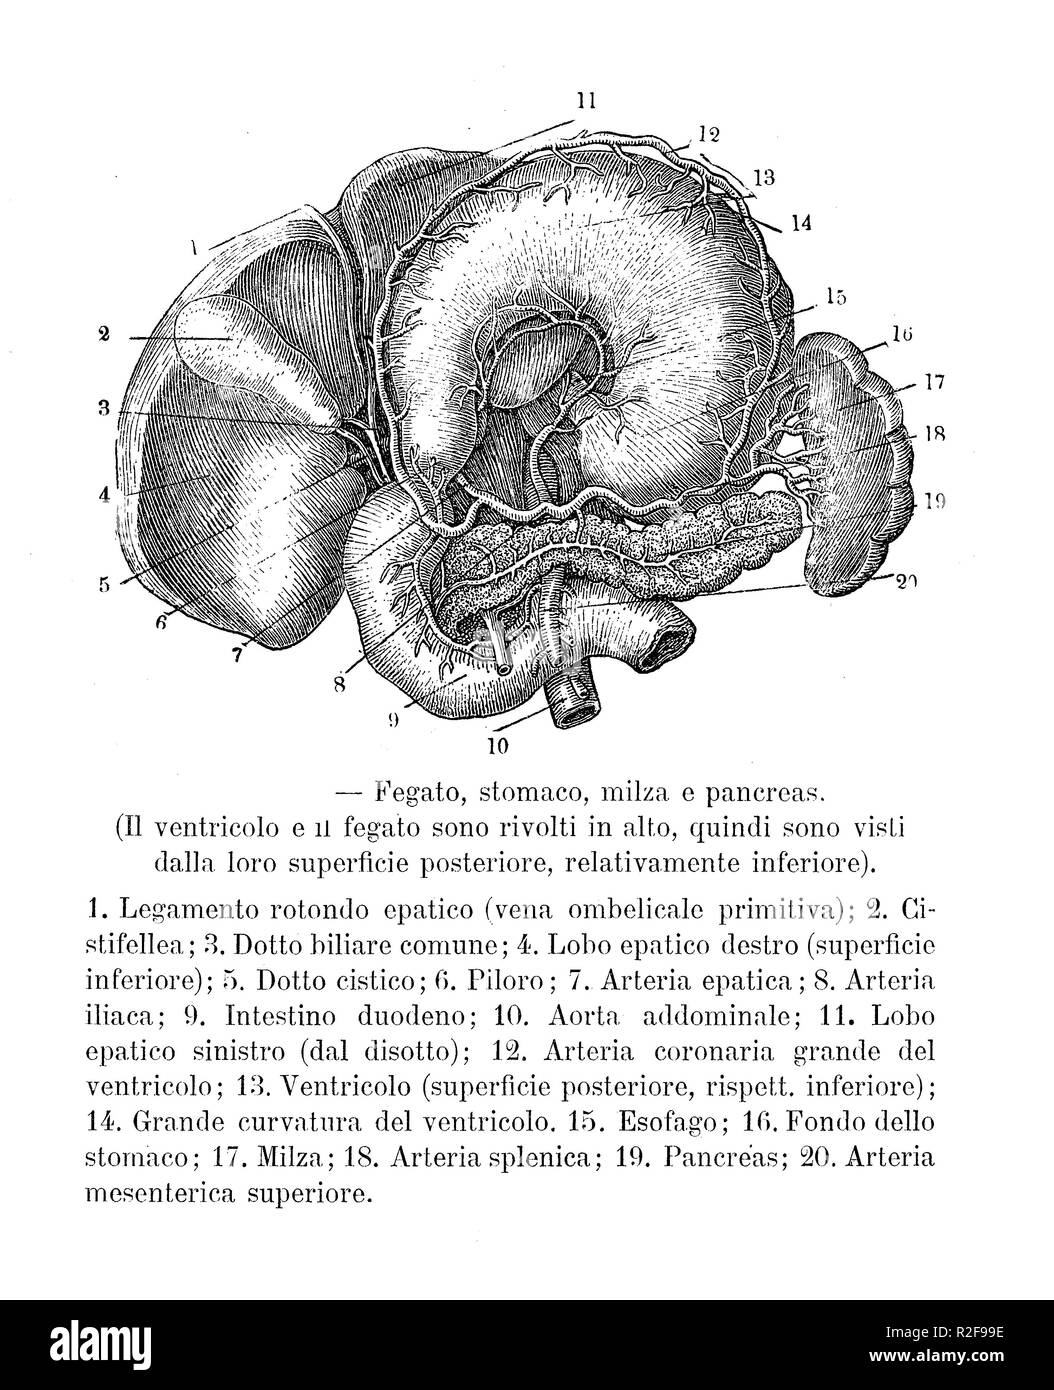 Vintage Abbildung der Anatomie, der Bauchorgane: Leber, Magen, Milz und Bauchspeicheldrüse mit Italienischen anatomischen Beschreibungen Stockfoto